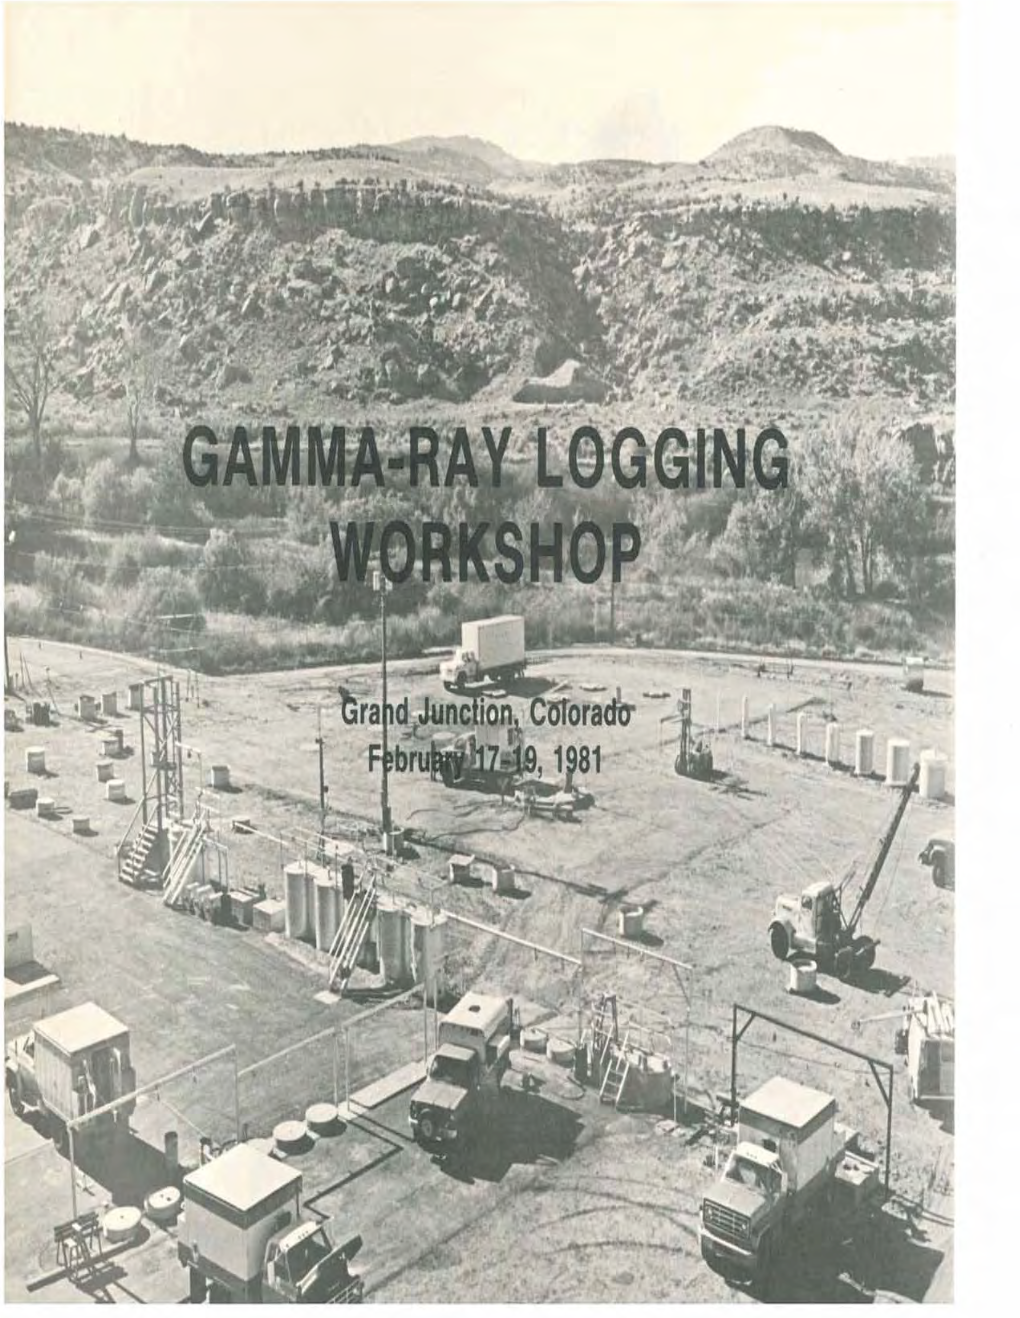 Gamma-Ray Logging Workshop